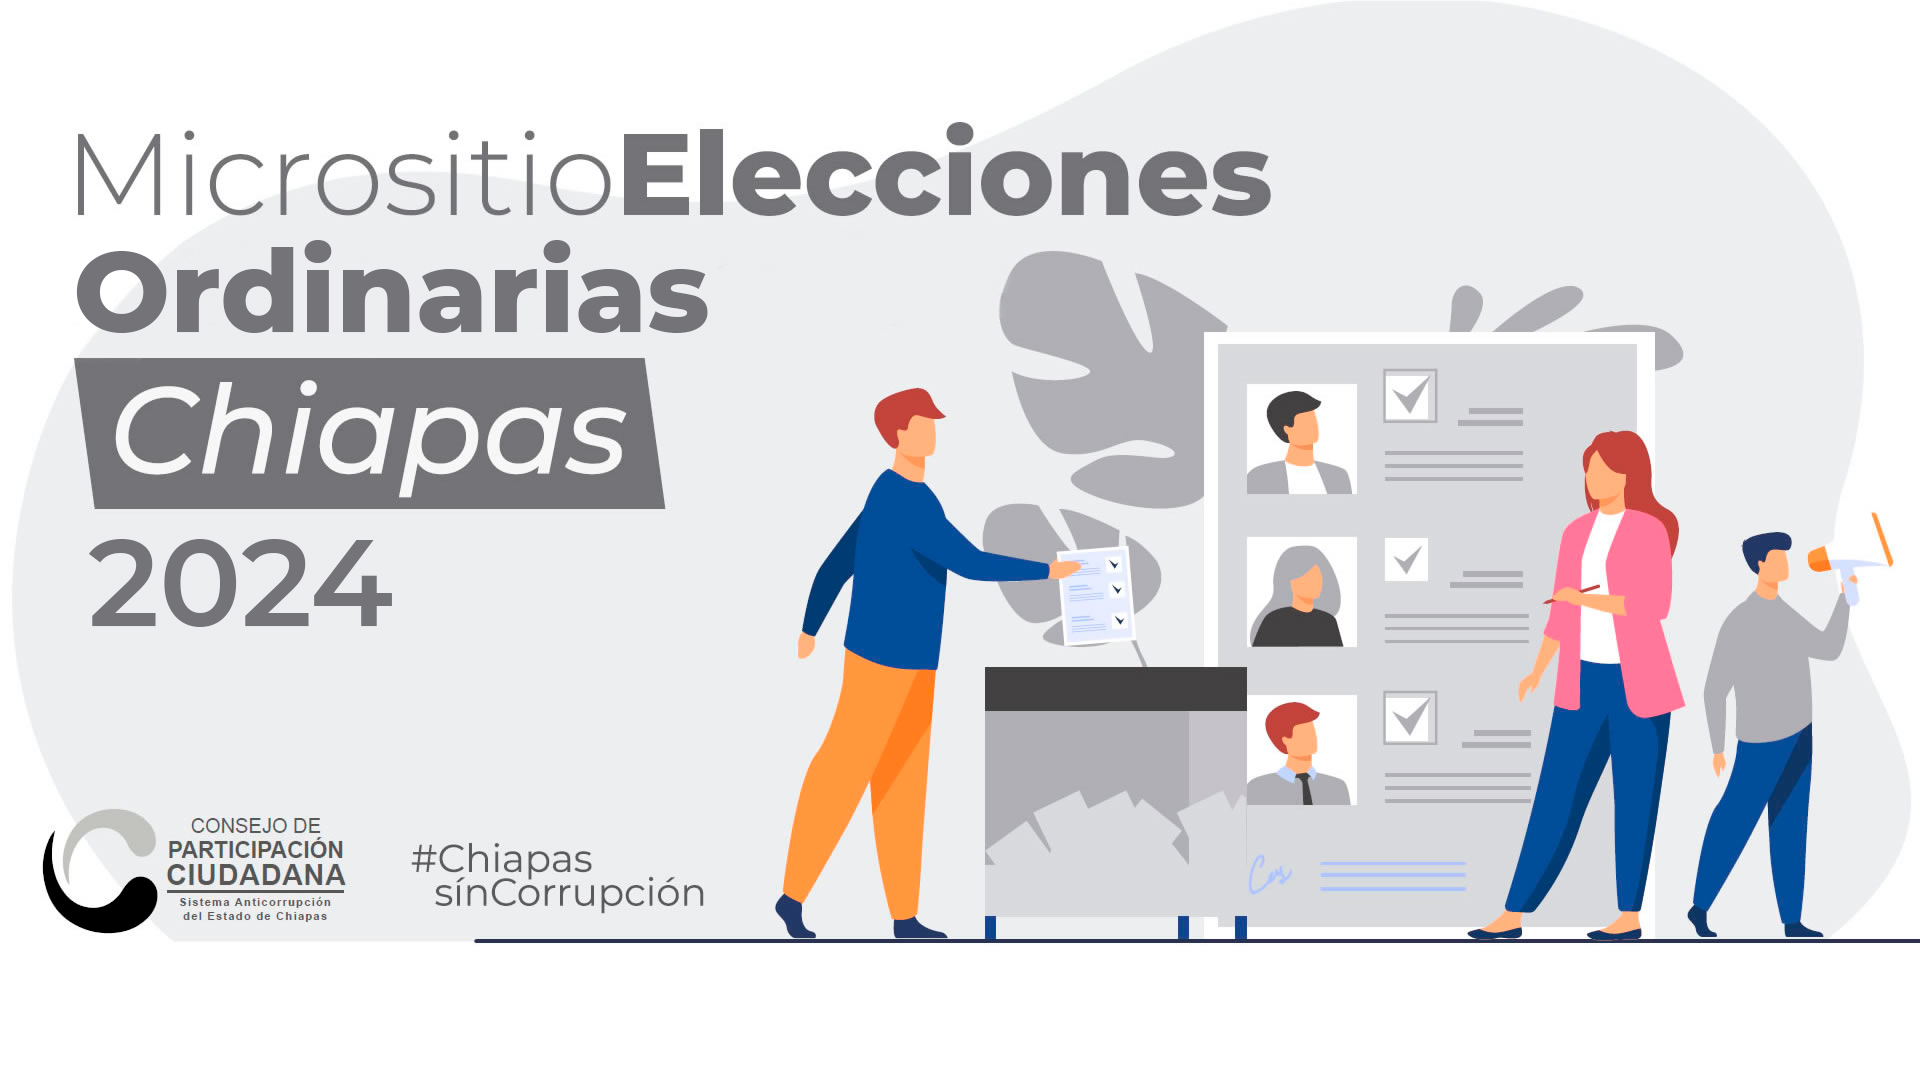 Micrositio de Elecciones Ordinarias Chiapas 2024